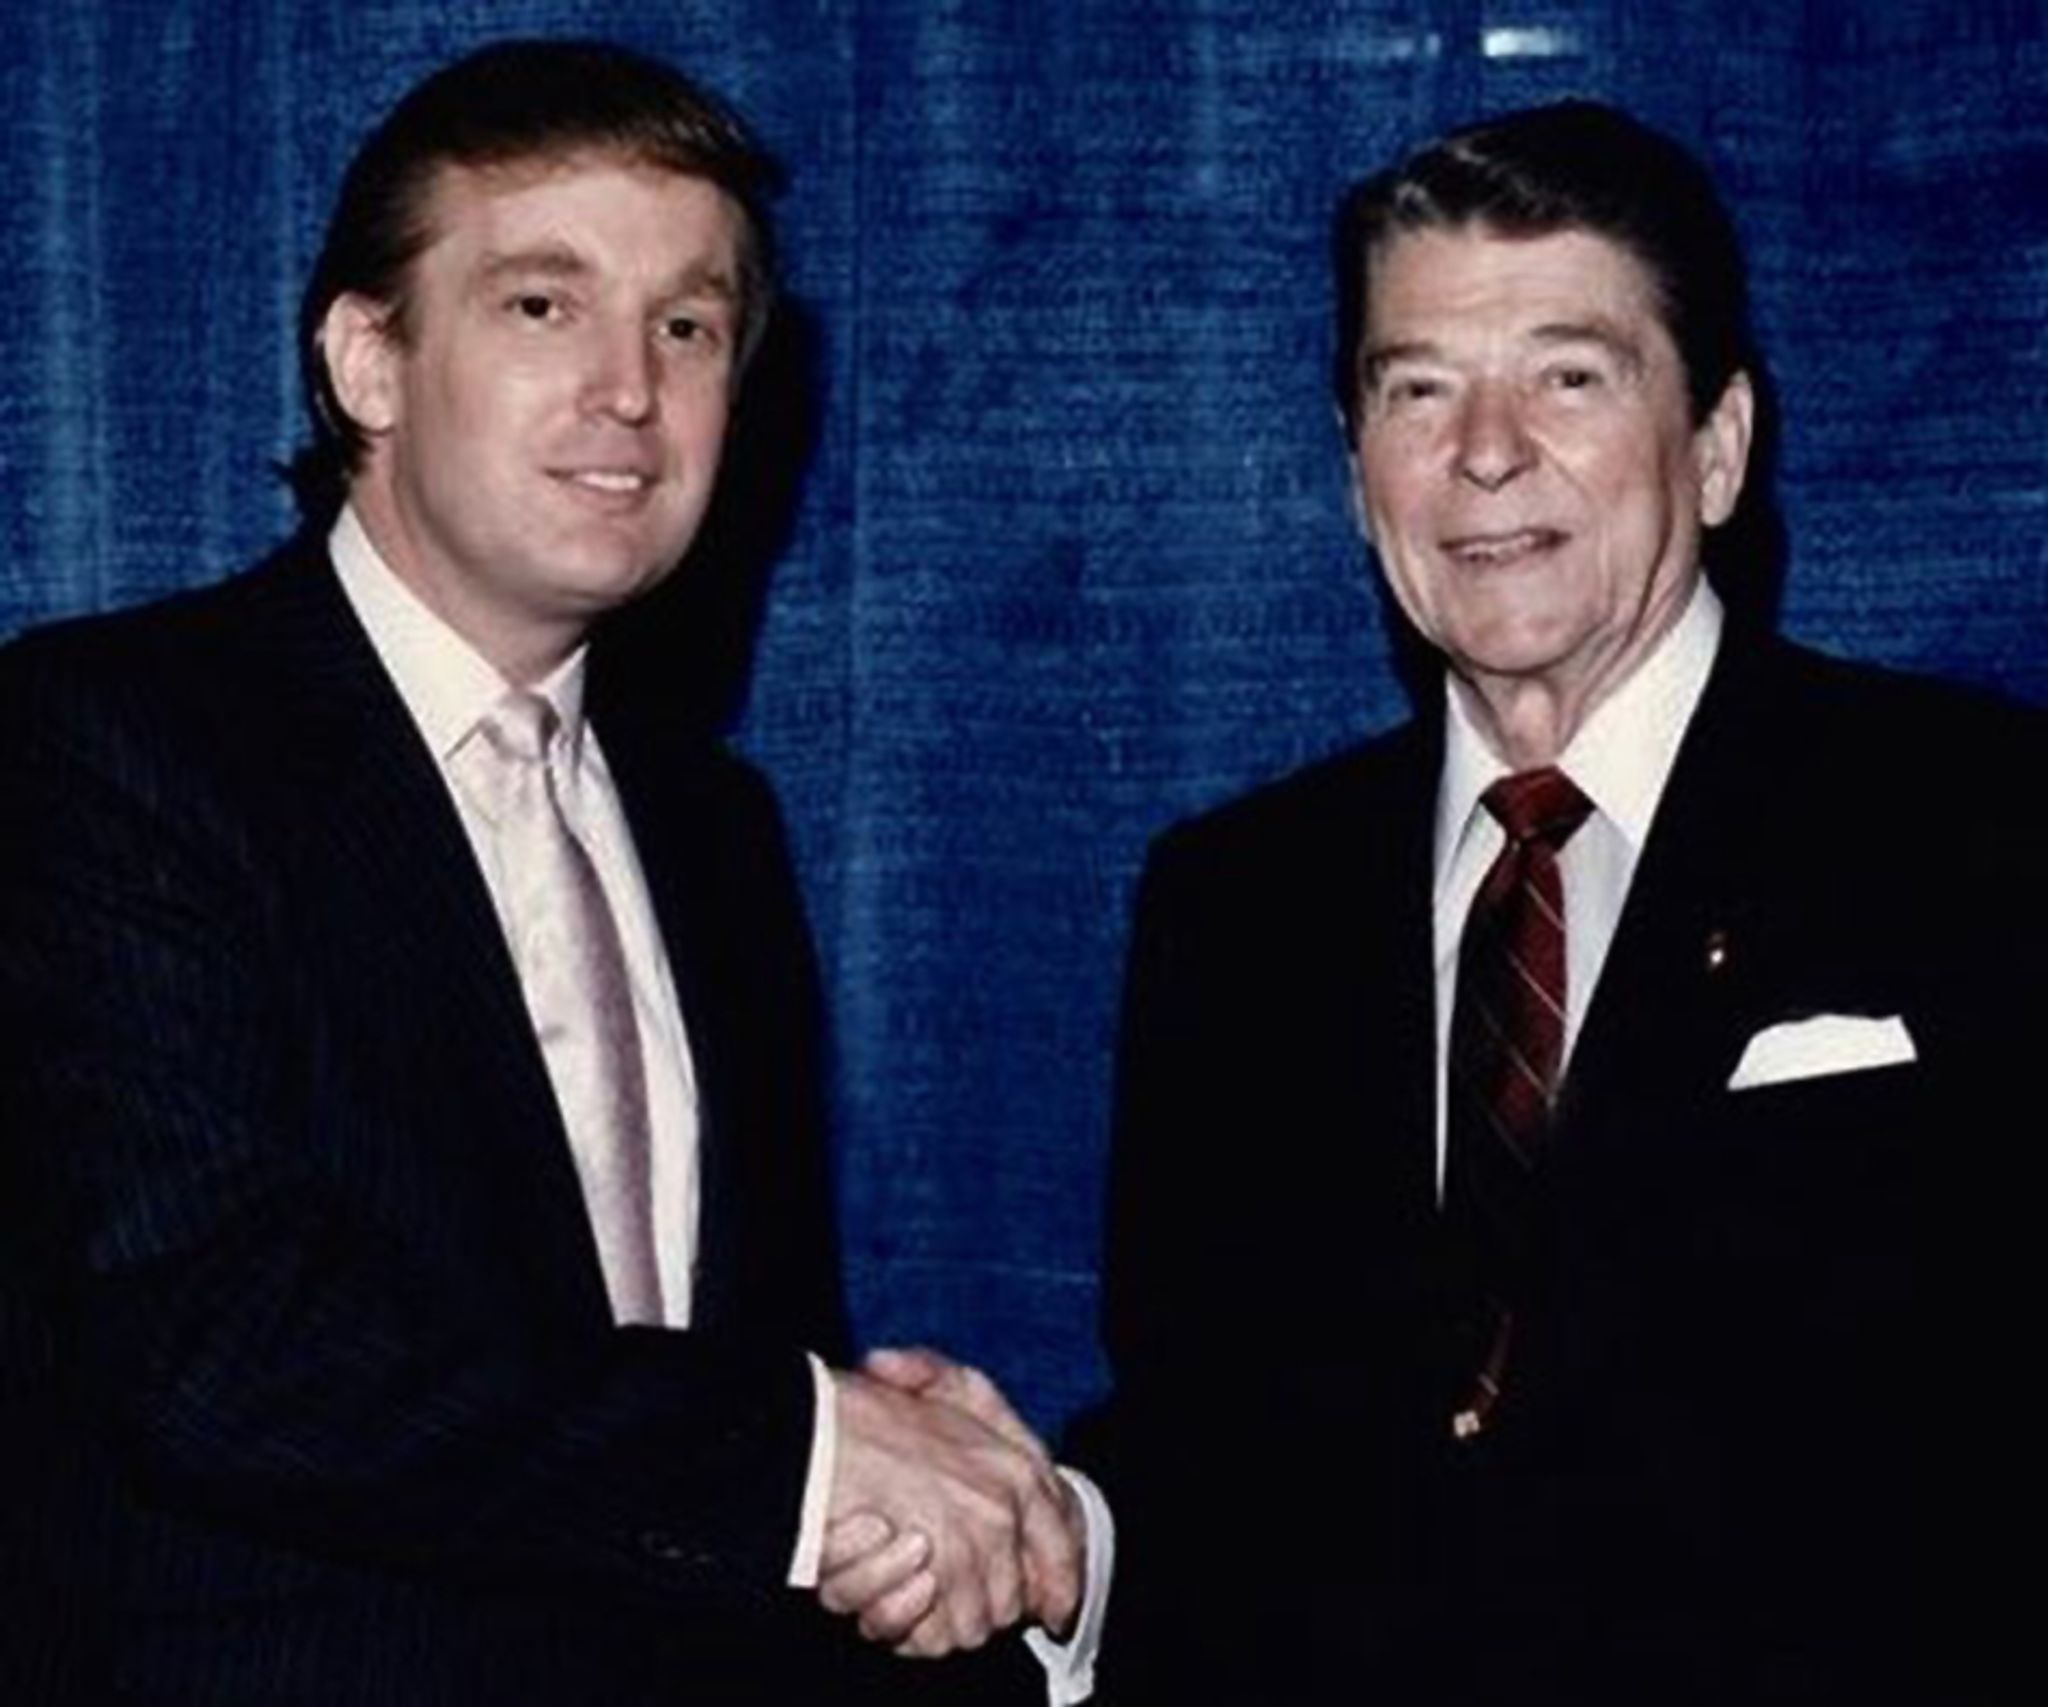 Trump_Reagan_s2048x1707.jpg